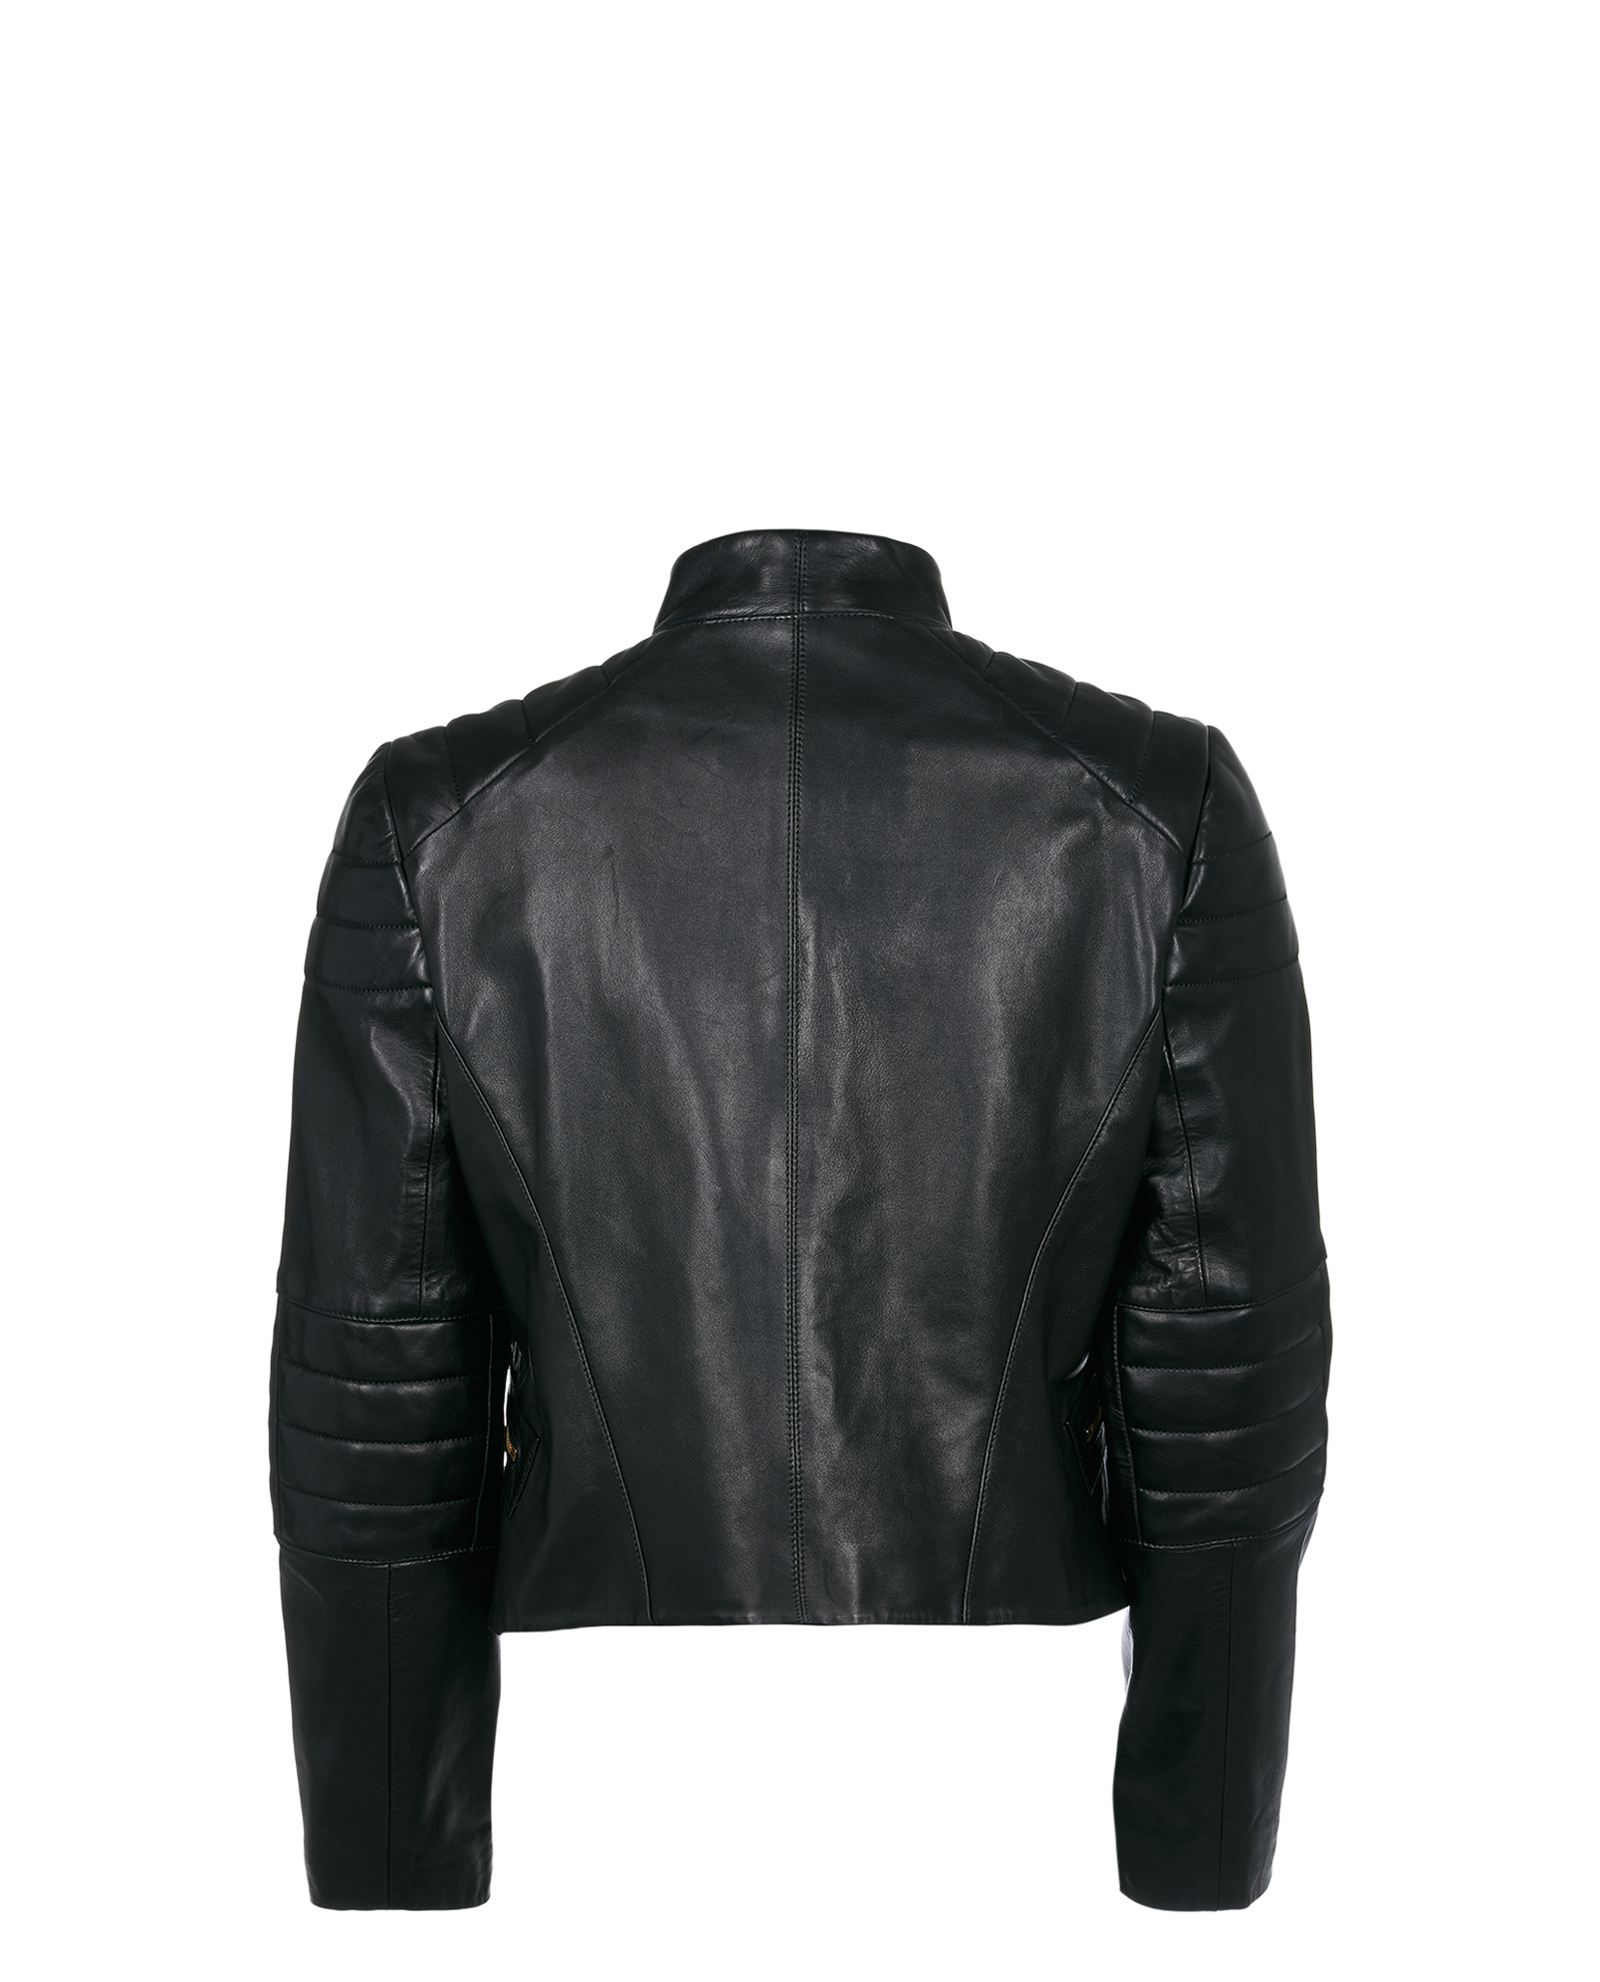 Amanda Wakeley Leather Jacket, Jackets - Designer Exchange | Buy Sell ...